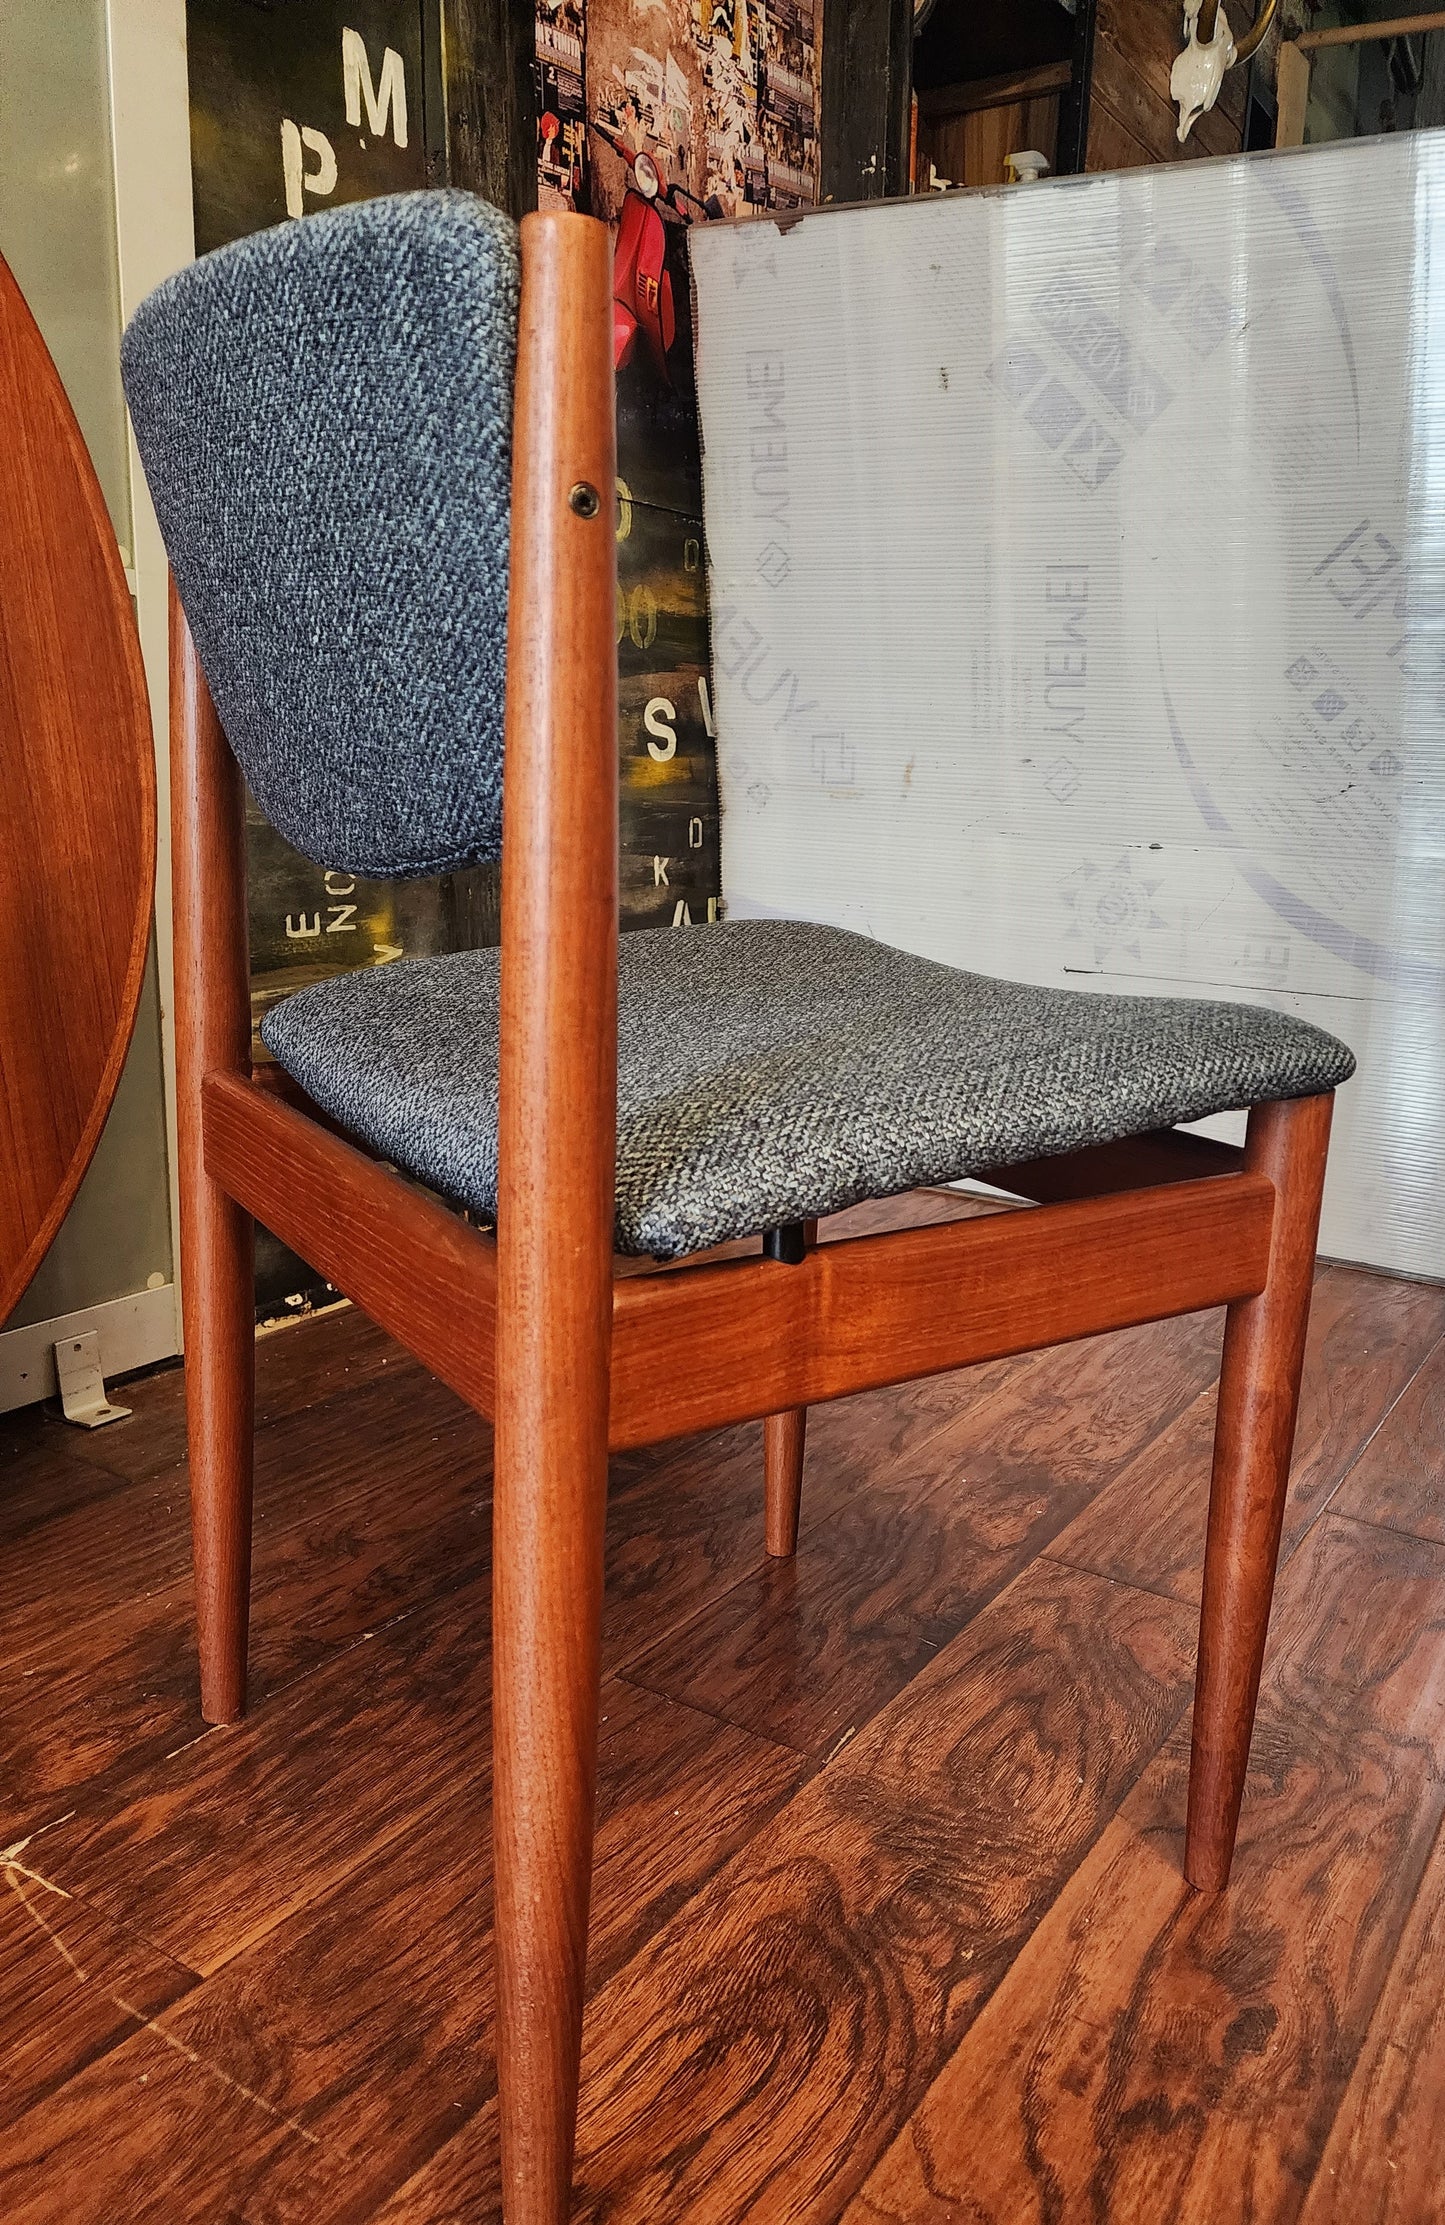 RESTORED Danish Mid-Century Modern Teak Chair by Finn Juhl for for France & Søn